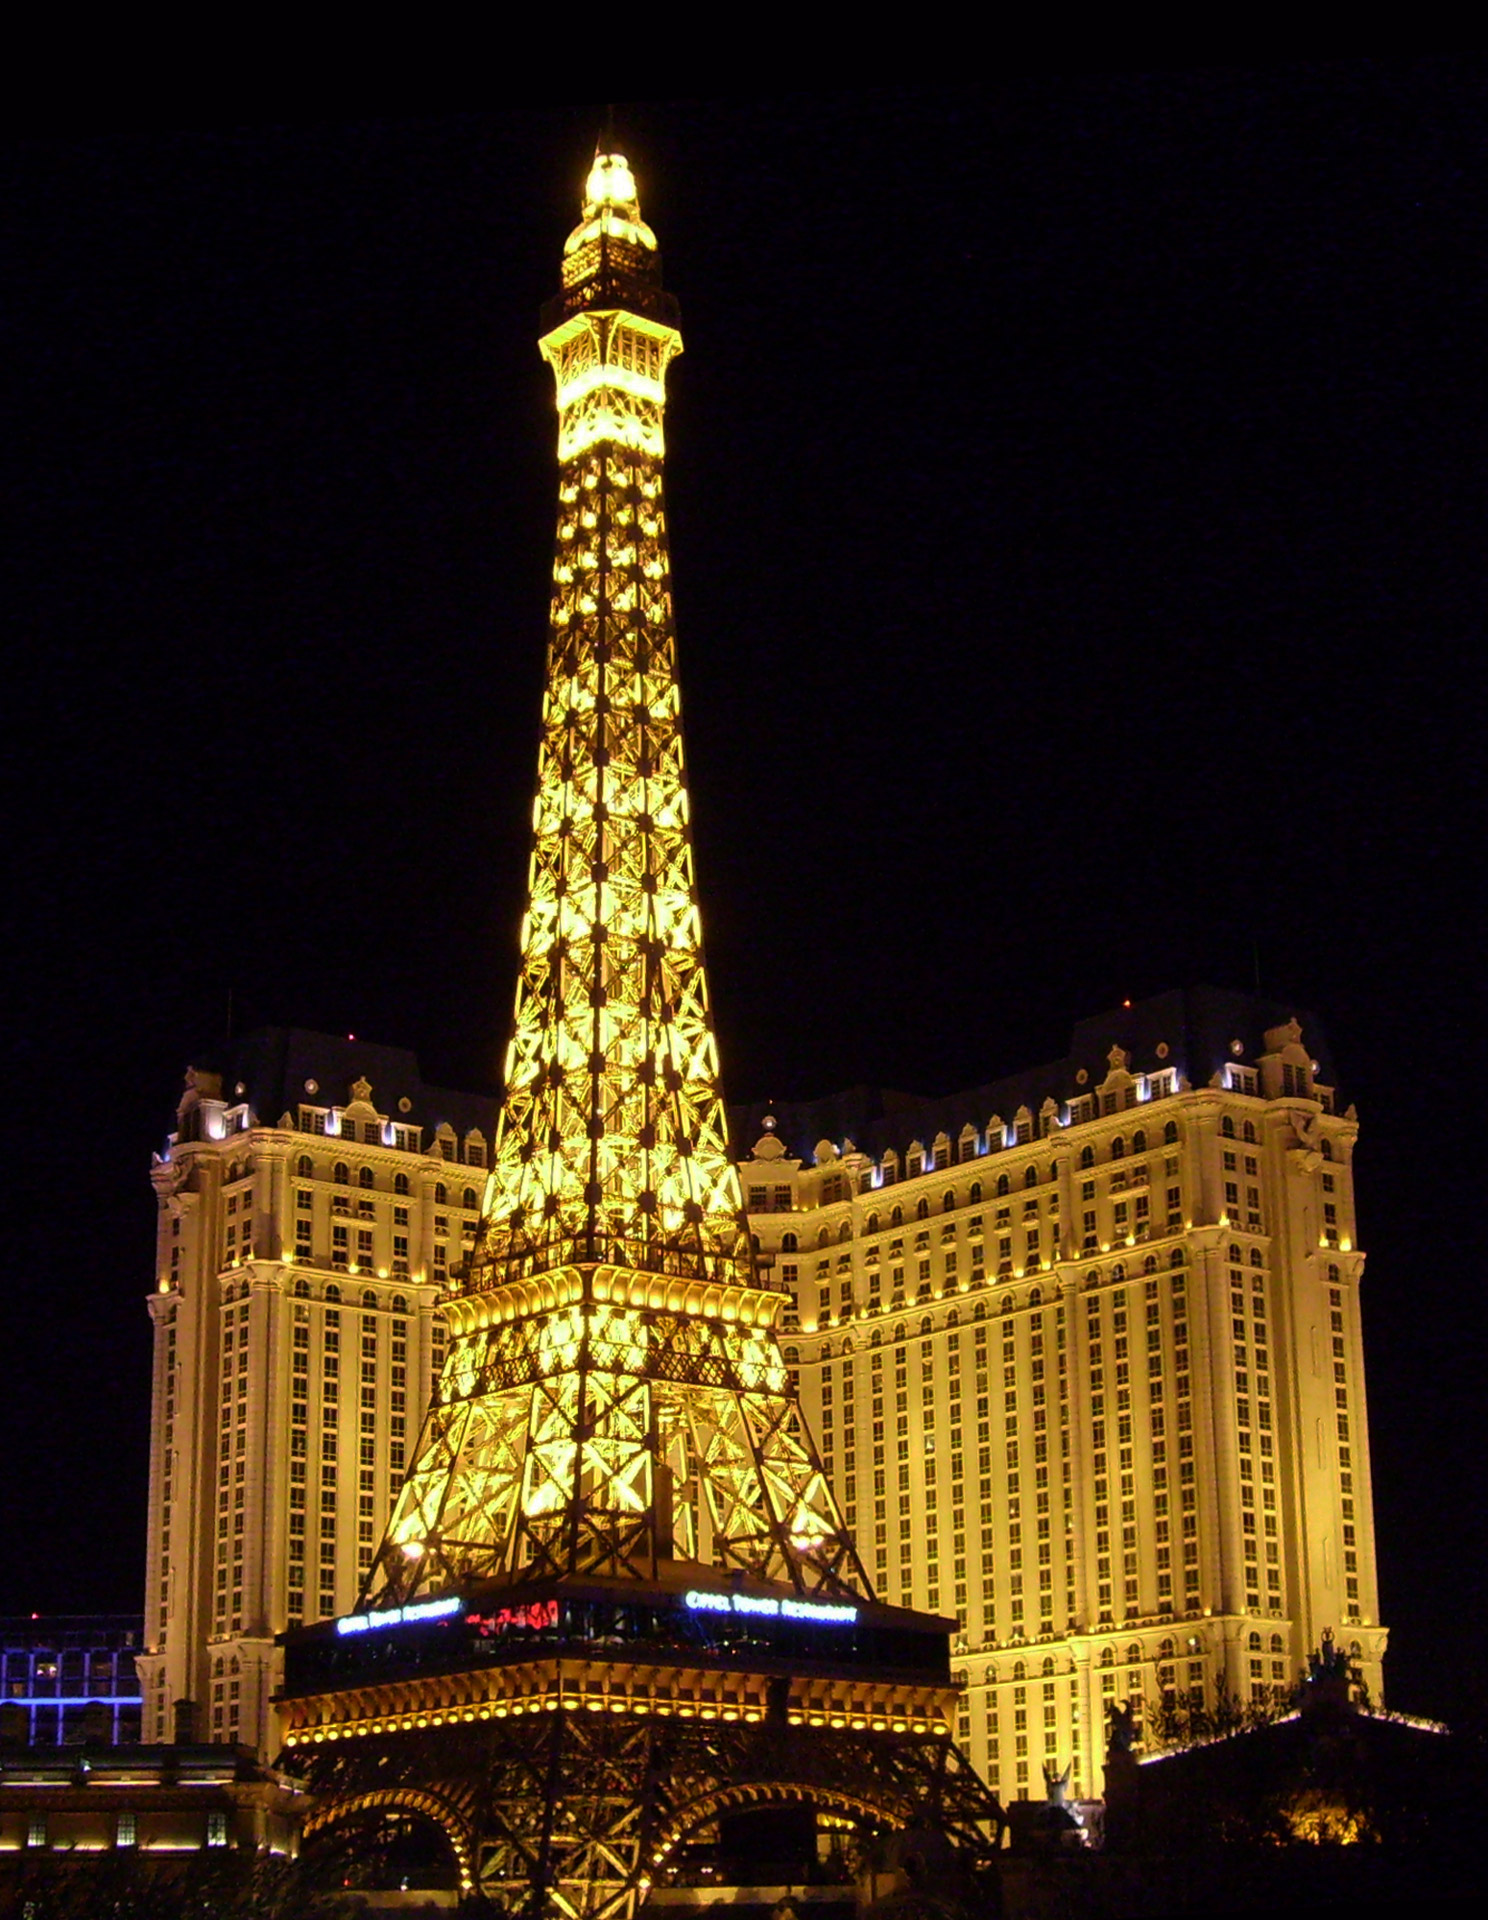 paris-hotel-casino-las-vegas-nv.jpg